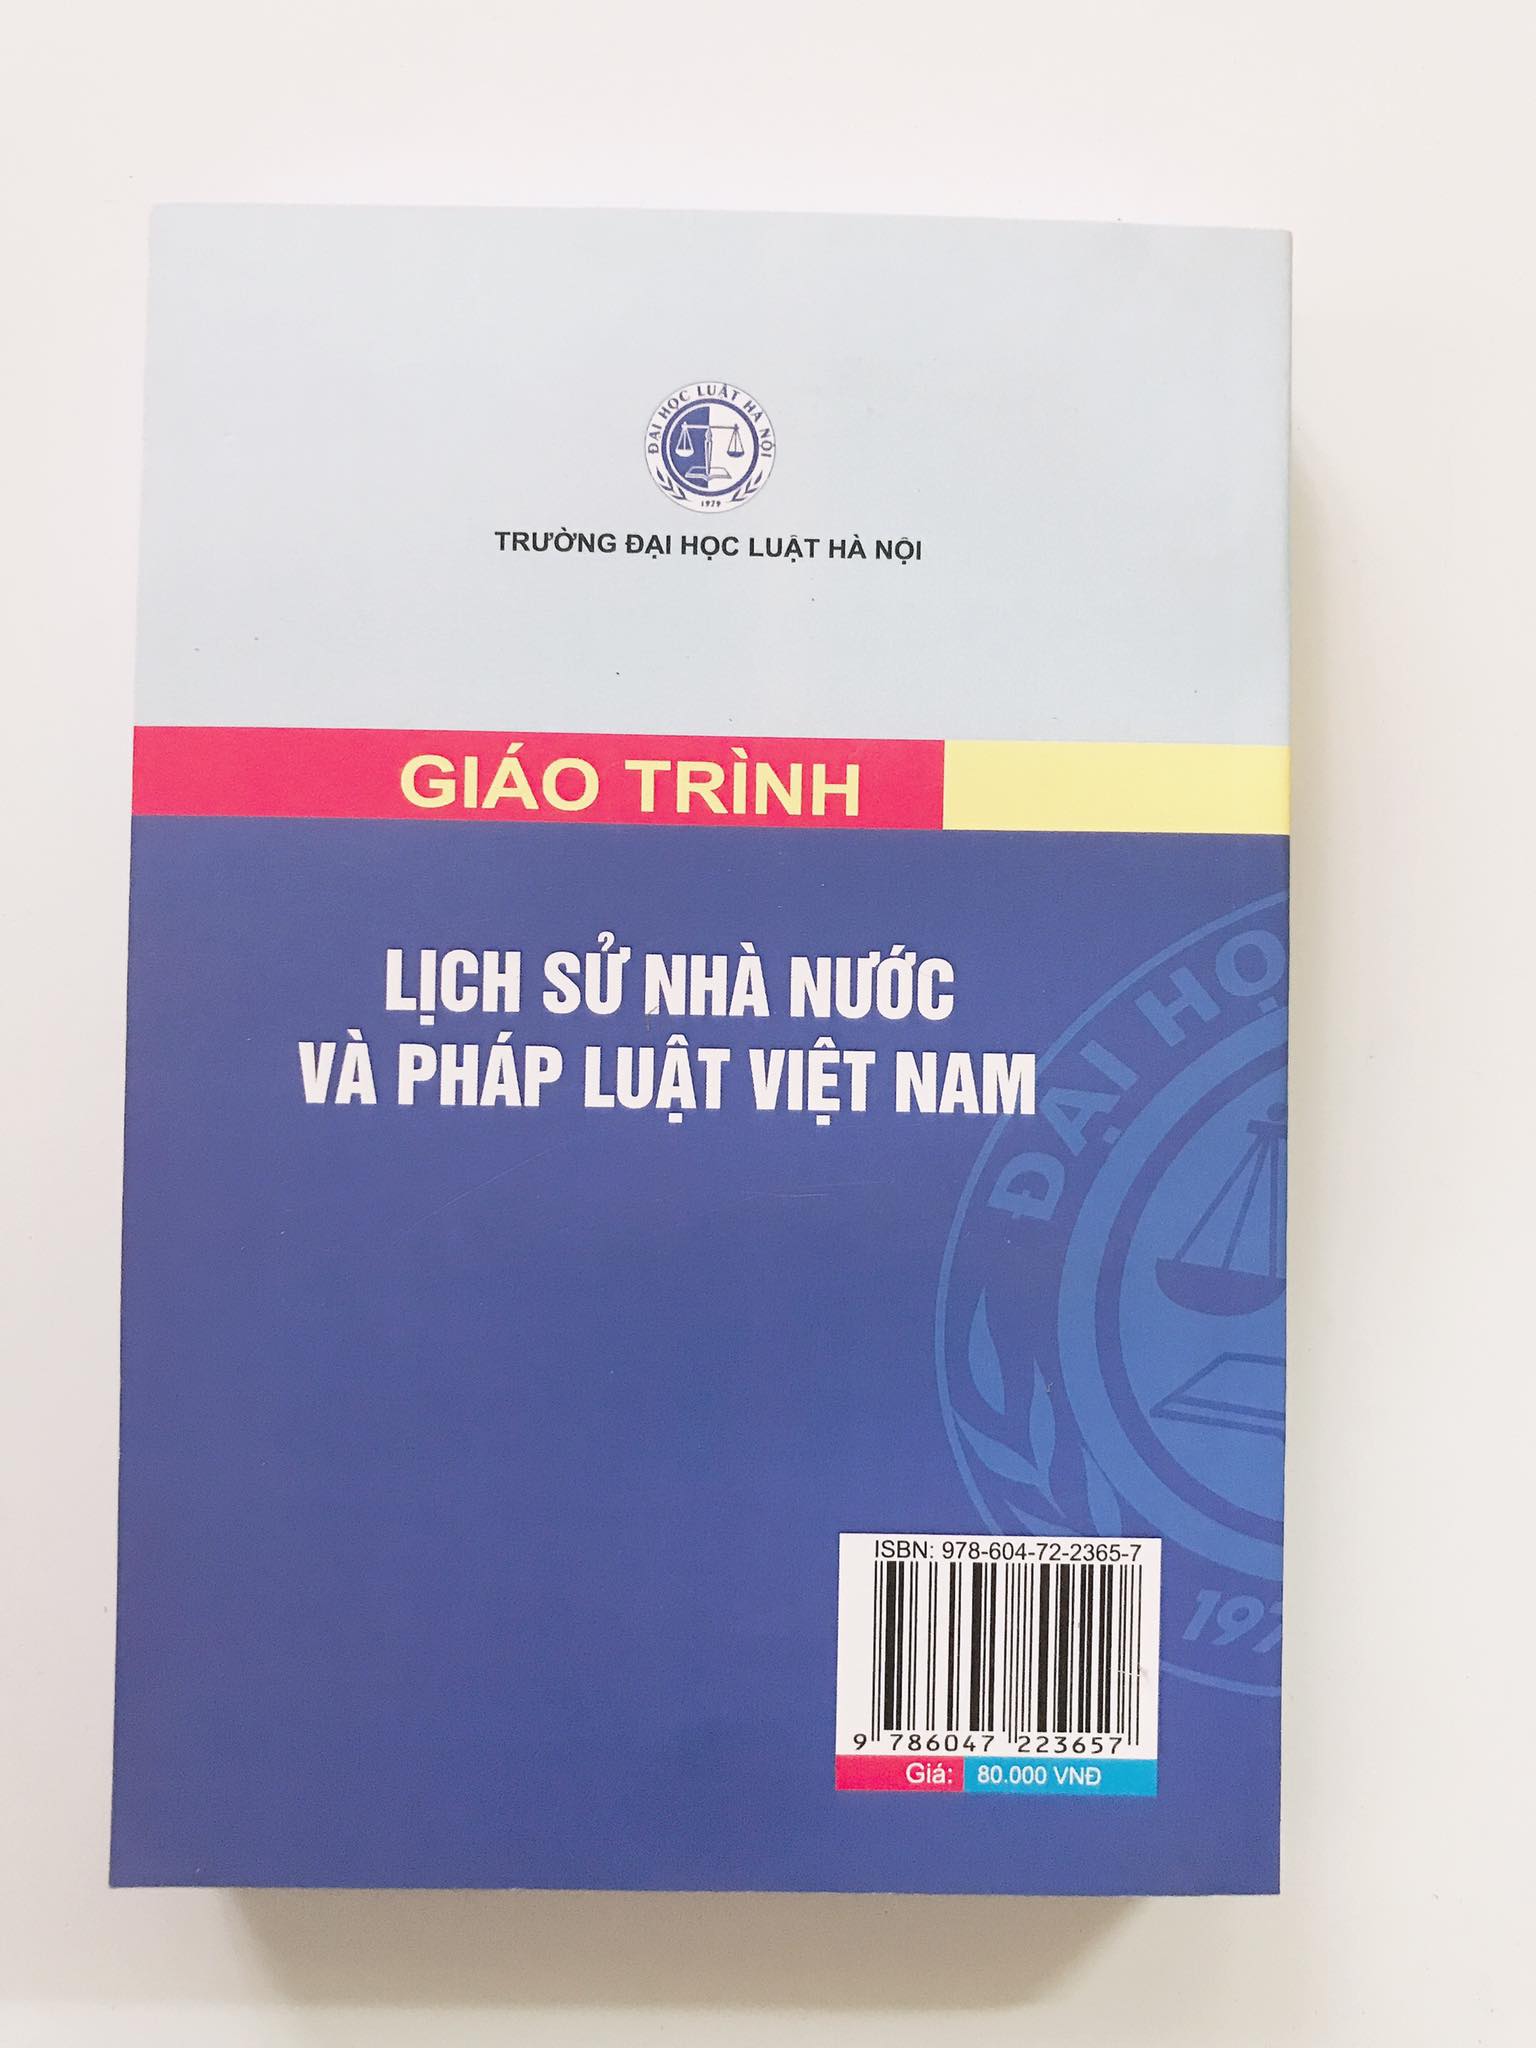 Sách - Giáo trình lịch sử nhà nước và pháp luật Việt Nam